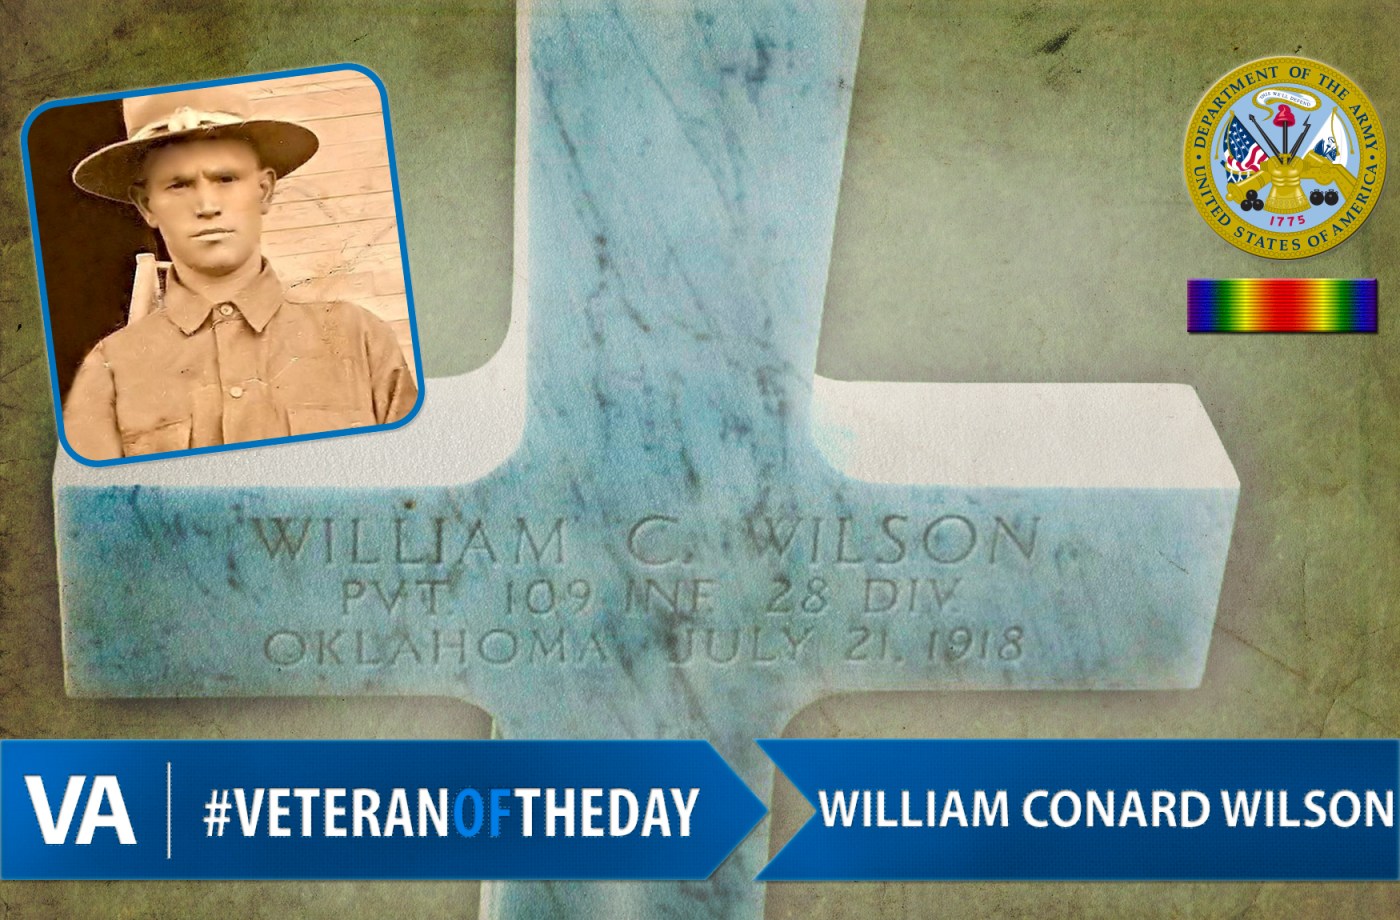 William Conrad Wilson - Veteran of the Day